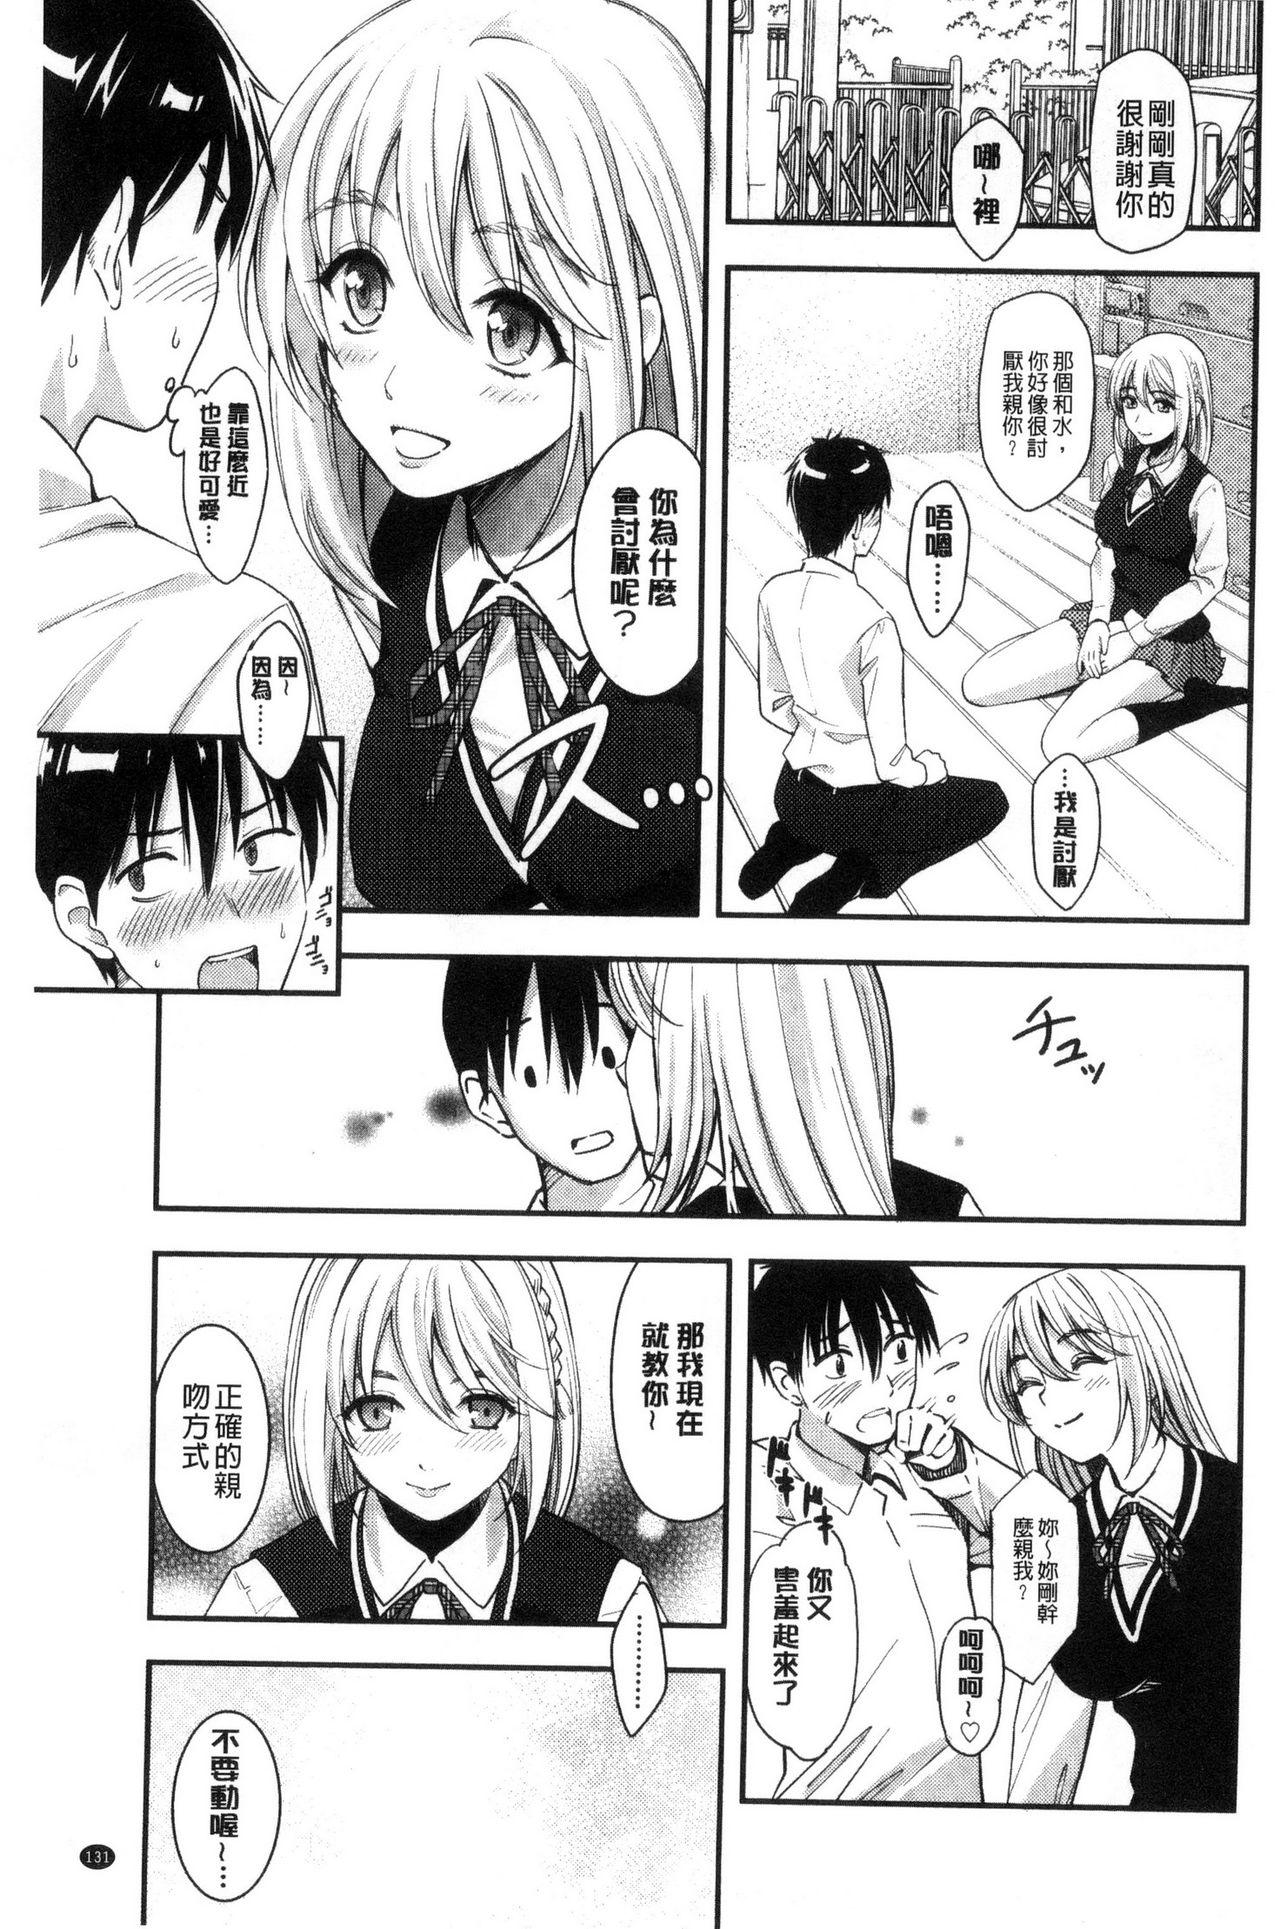 Seifuku no Mama Aishinasai! - Love in school uniform 132